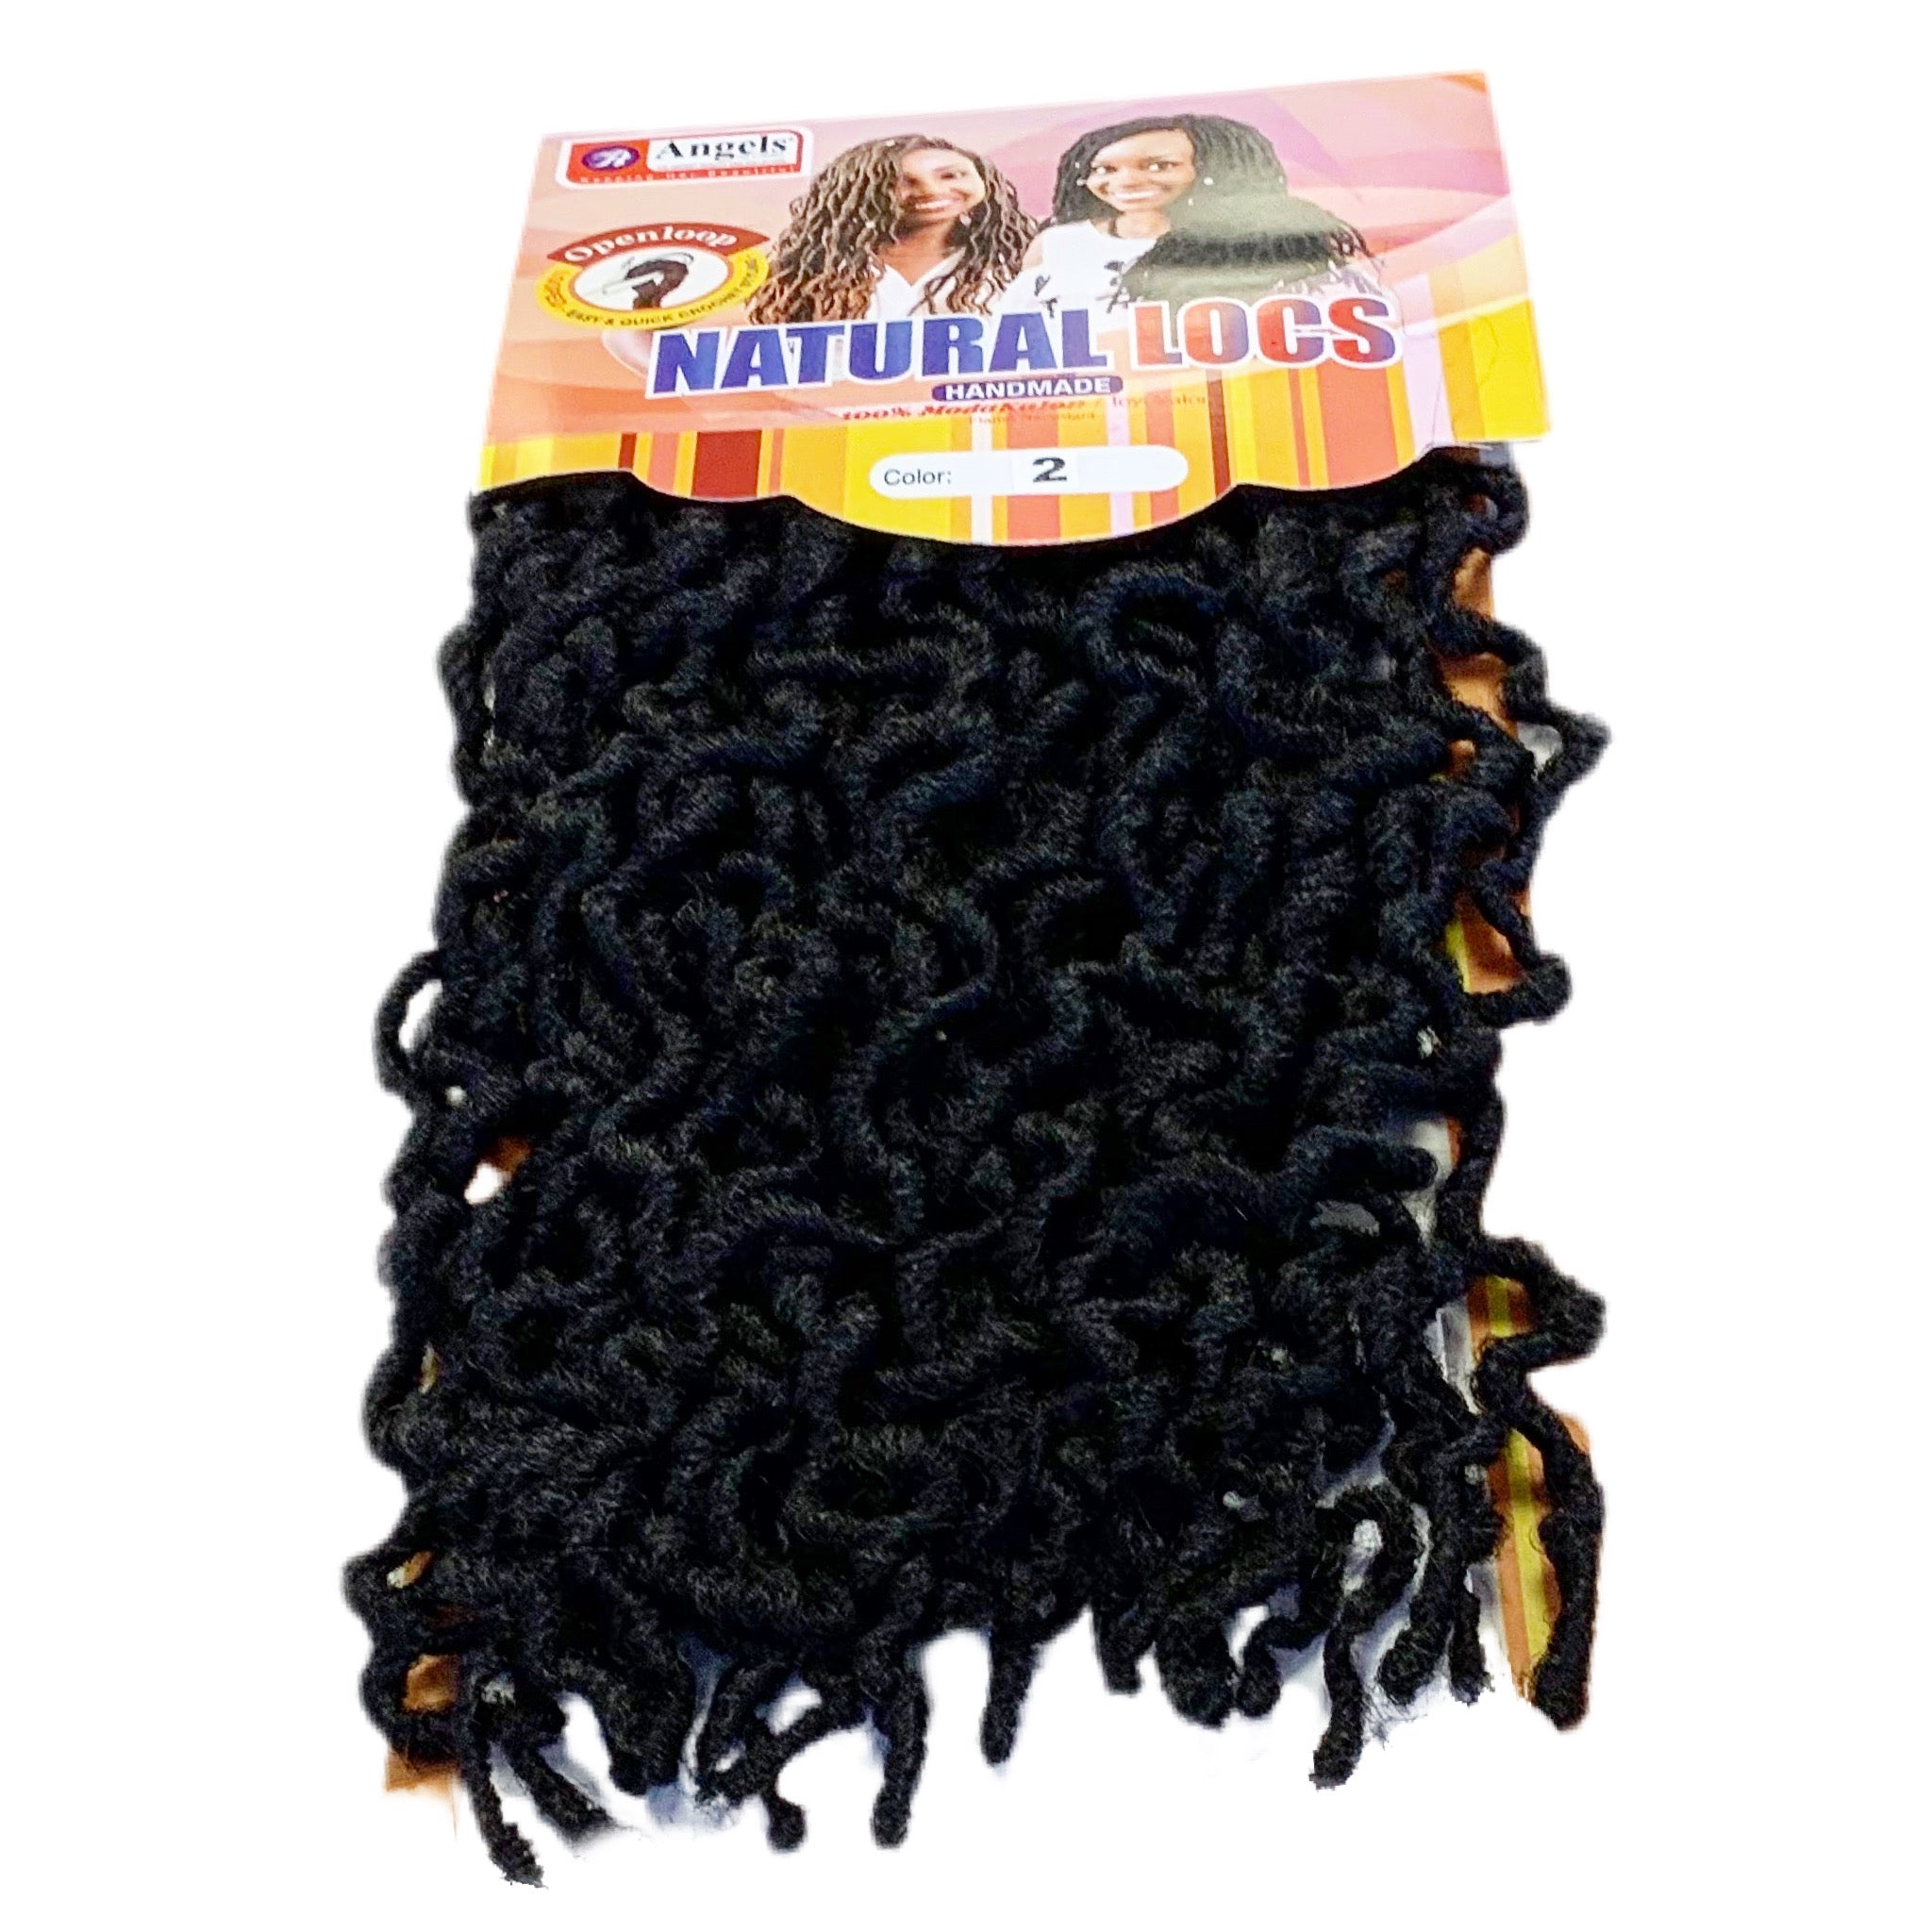 Natural Locs - Crochet Use 18” long – Mama Mata